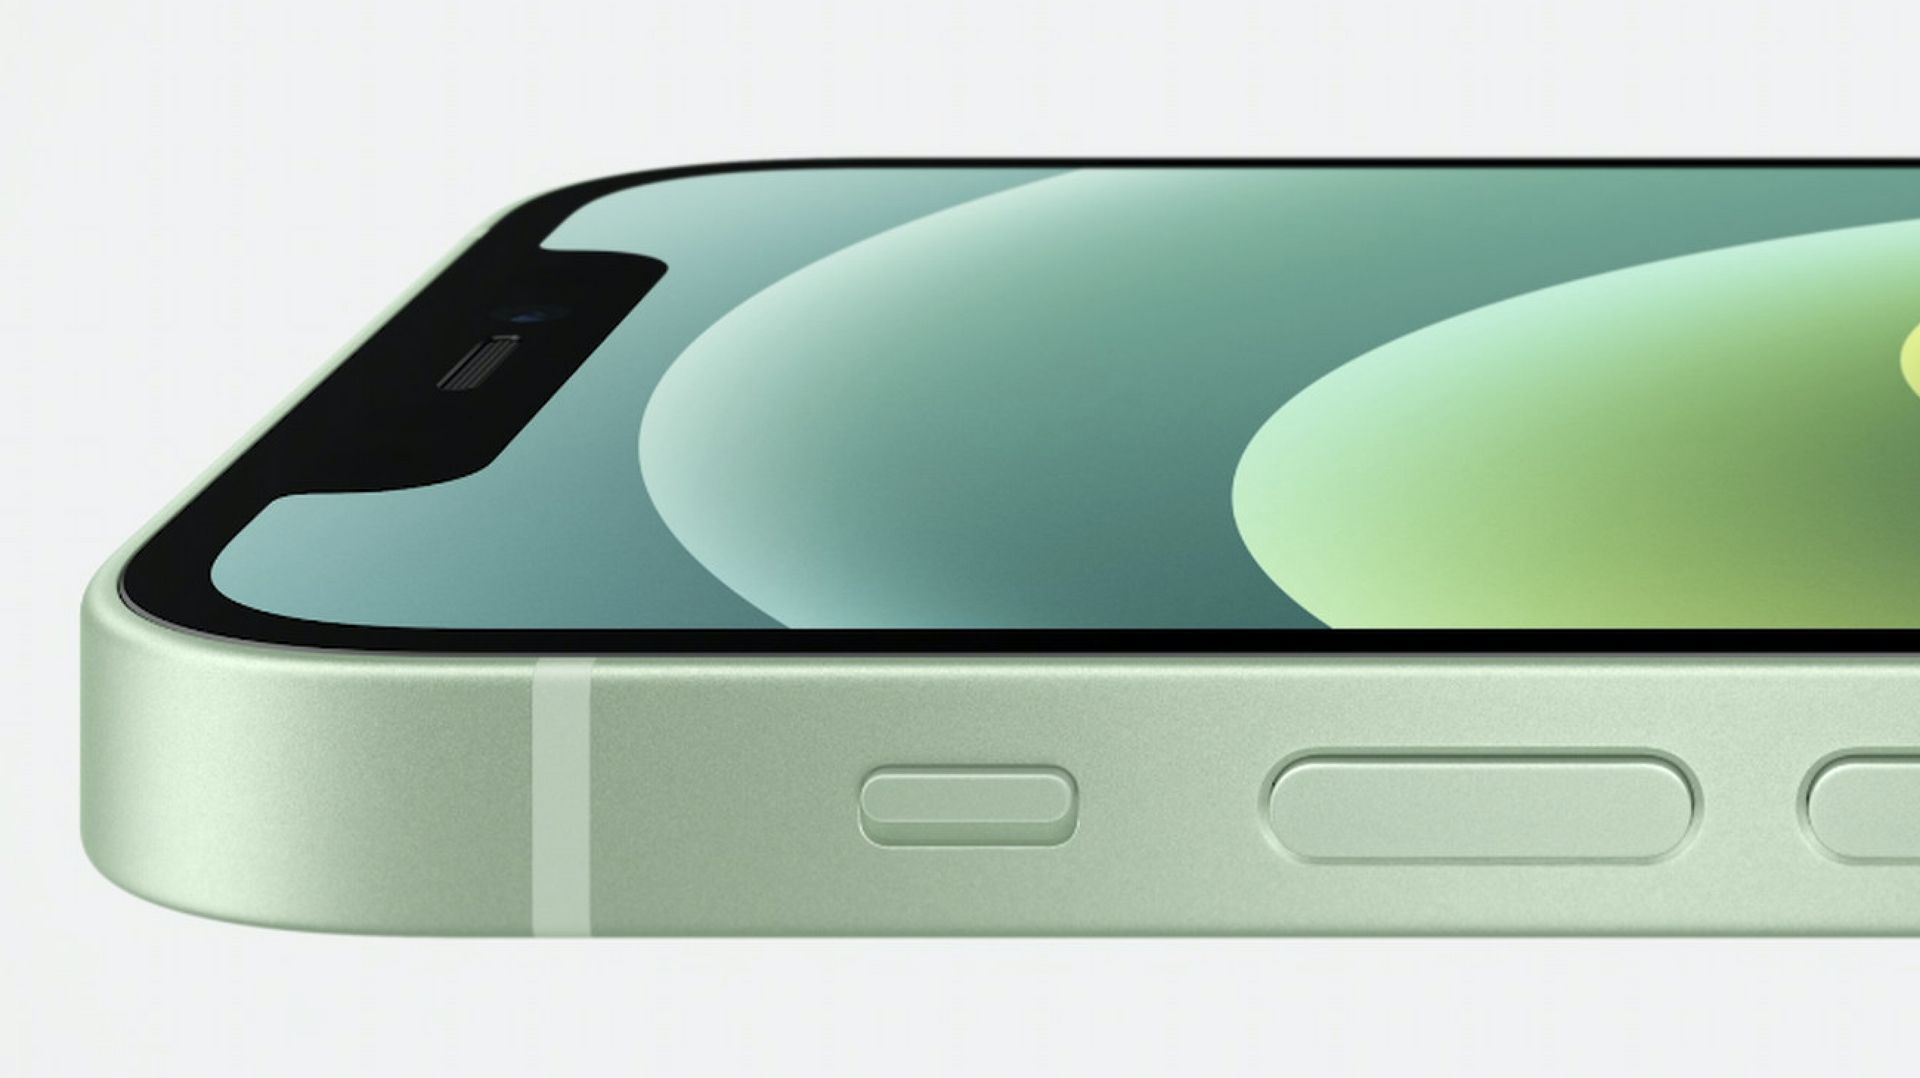 Apple officialise la gamme iPhone 12 et s’ouvre à la 5G